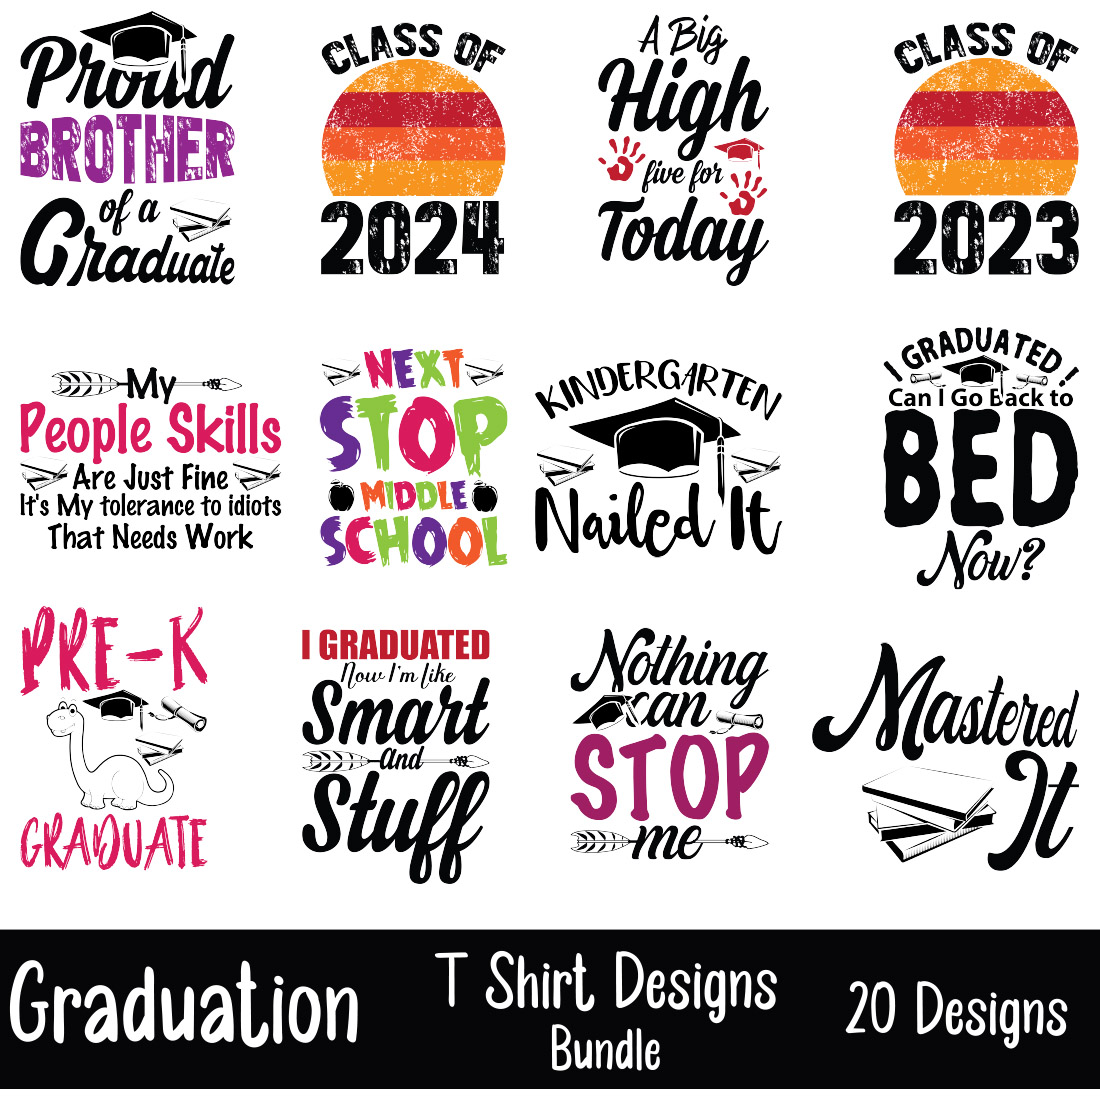 Graduation T-Shirt Designs Bundle main cover